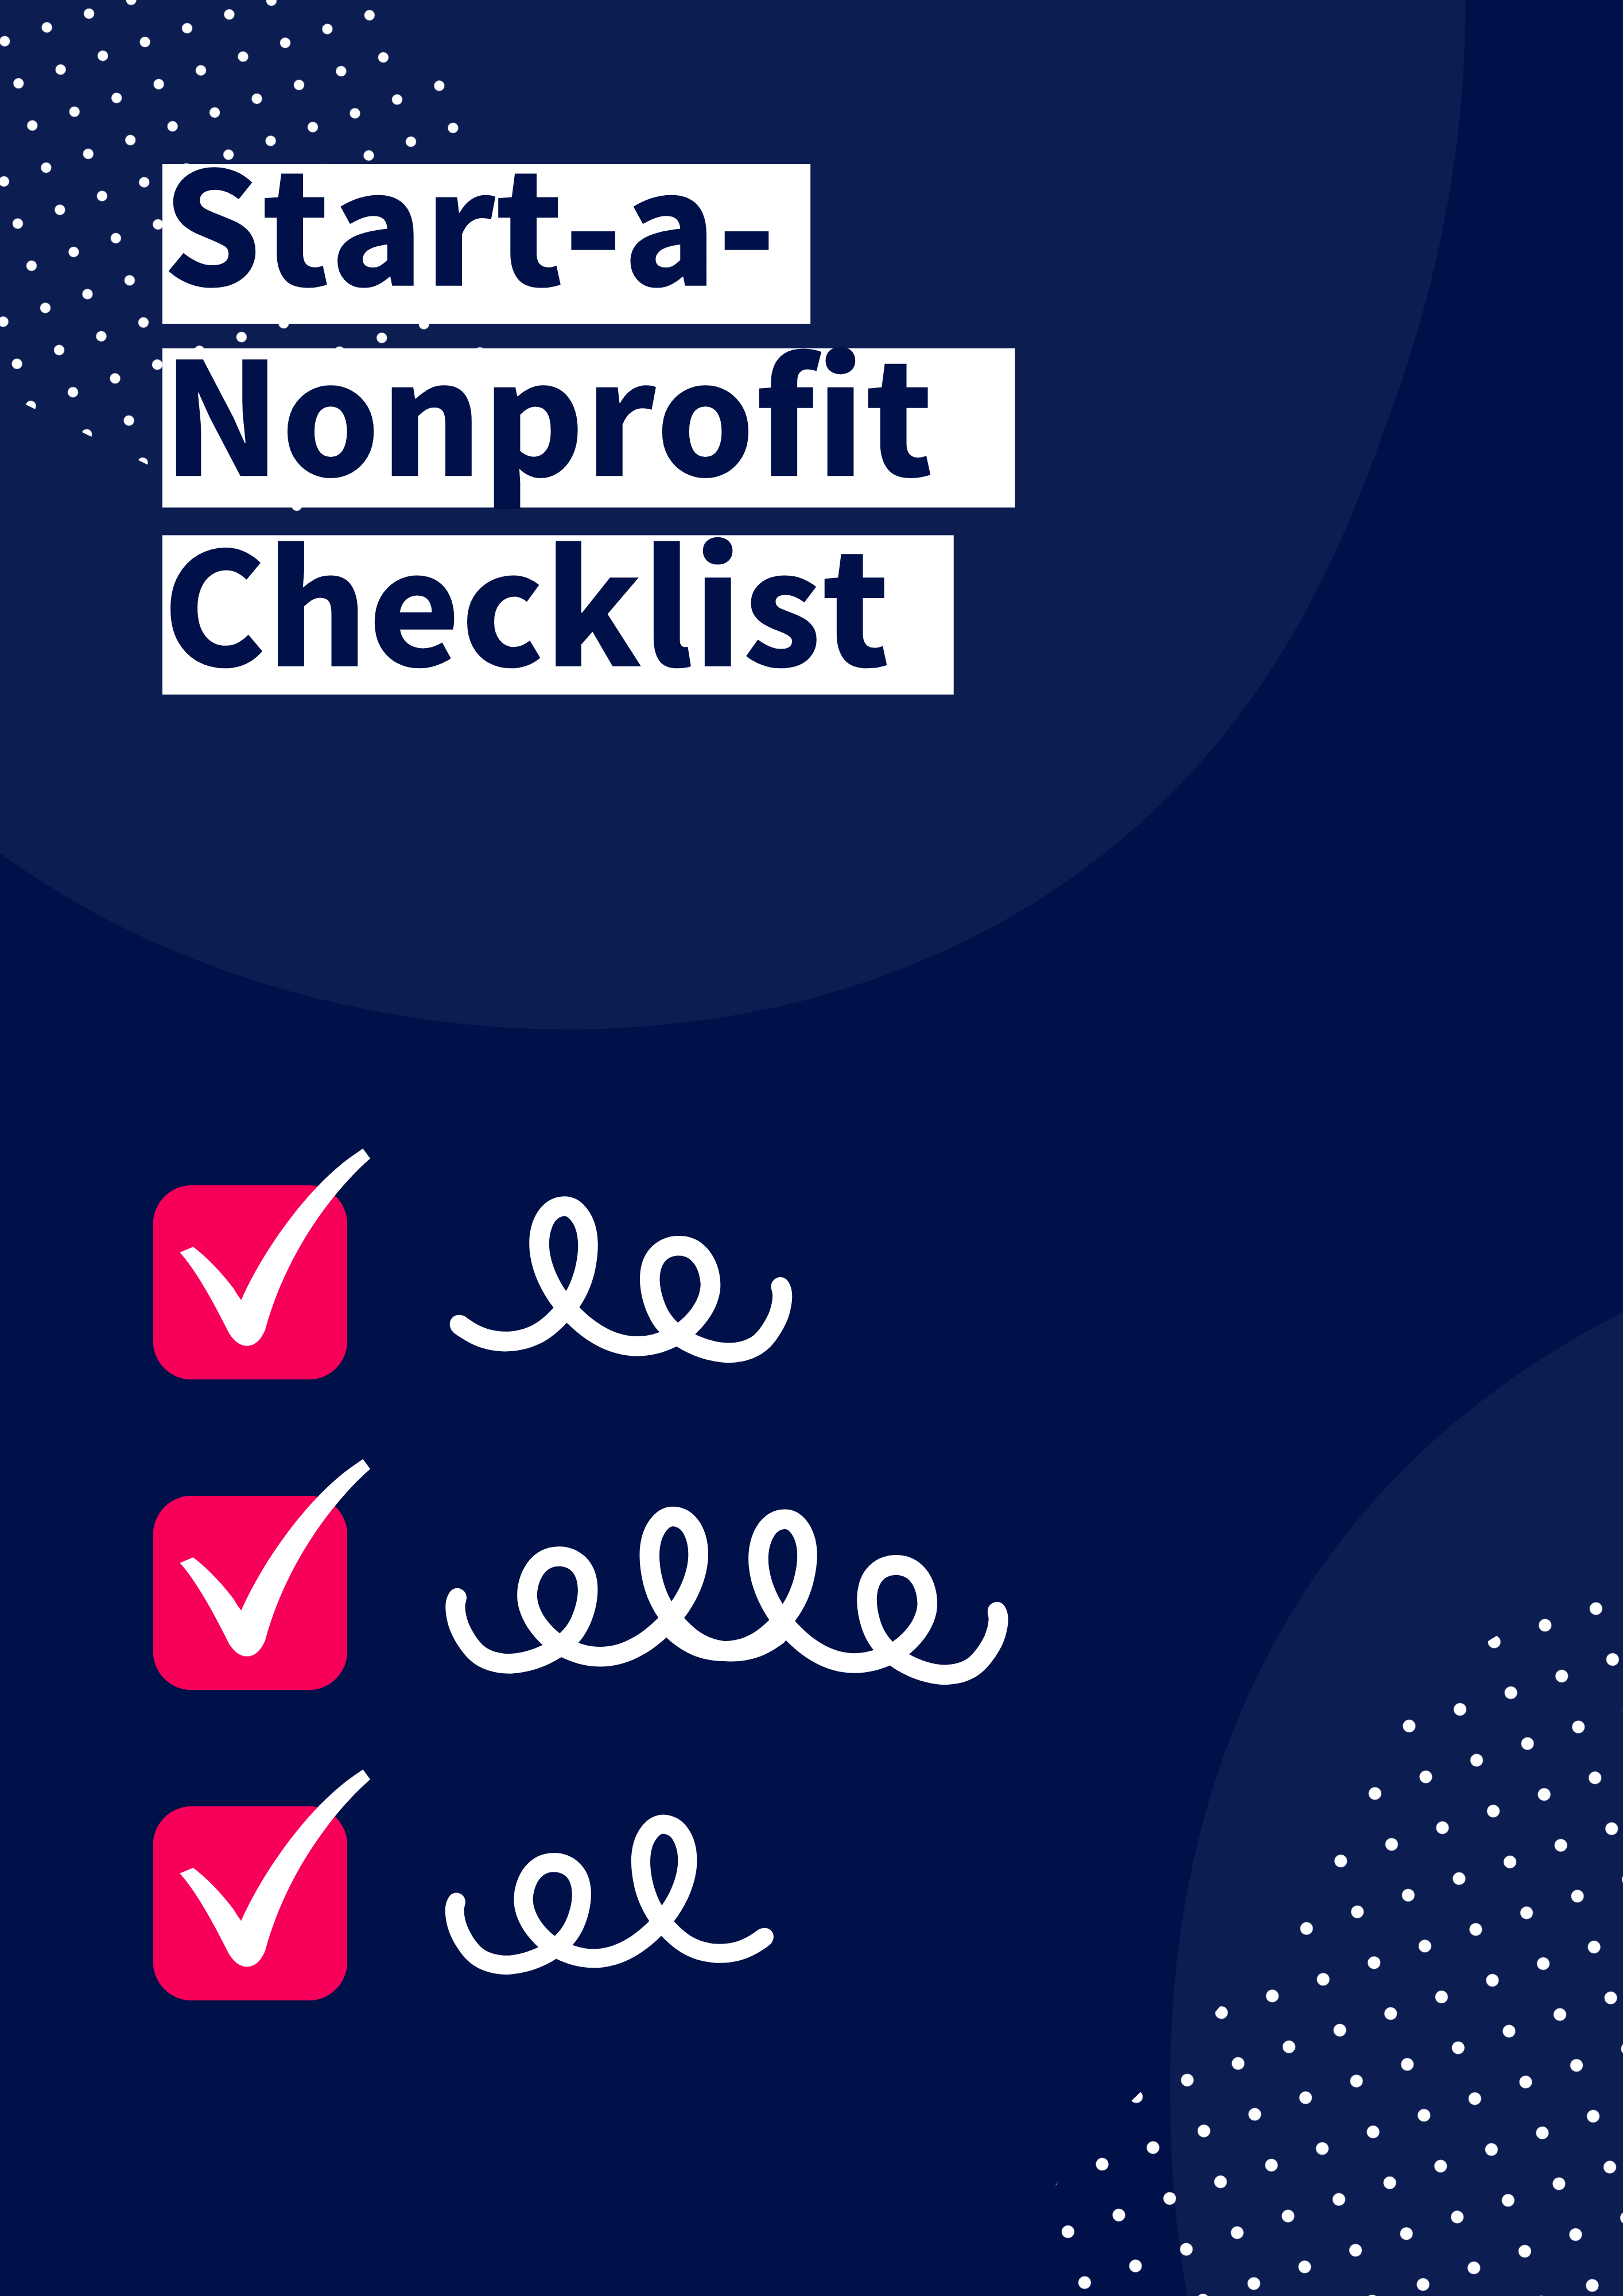 Start-a-Nonprofit Checklist